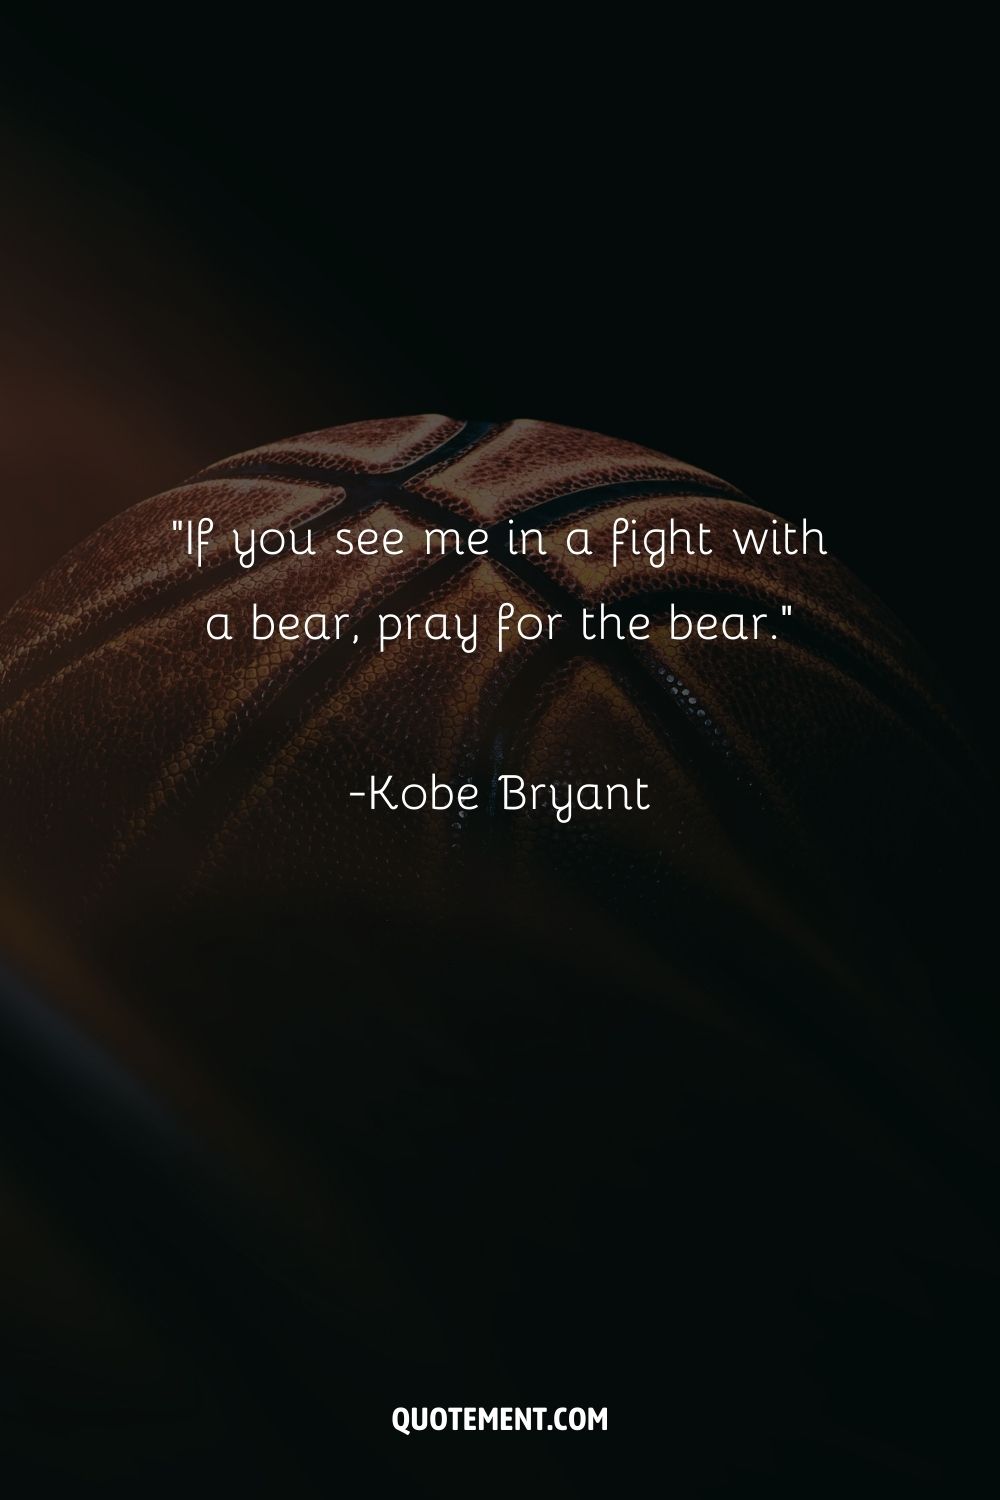 Imagen de un balón que representa una cita del mejor jugador de baloncesto.